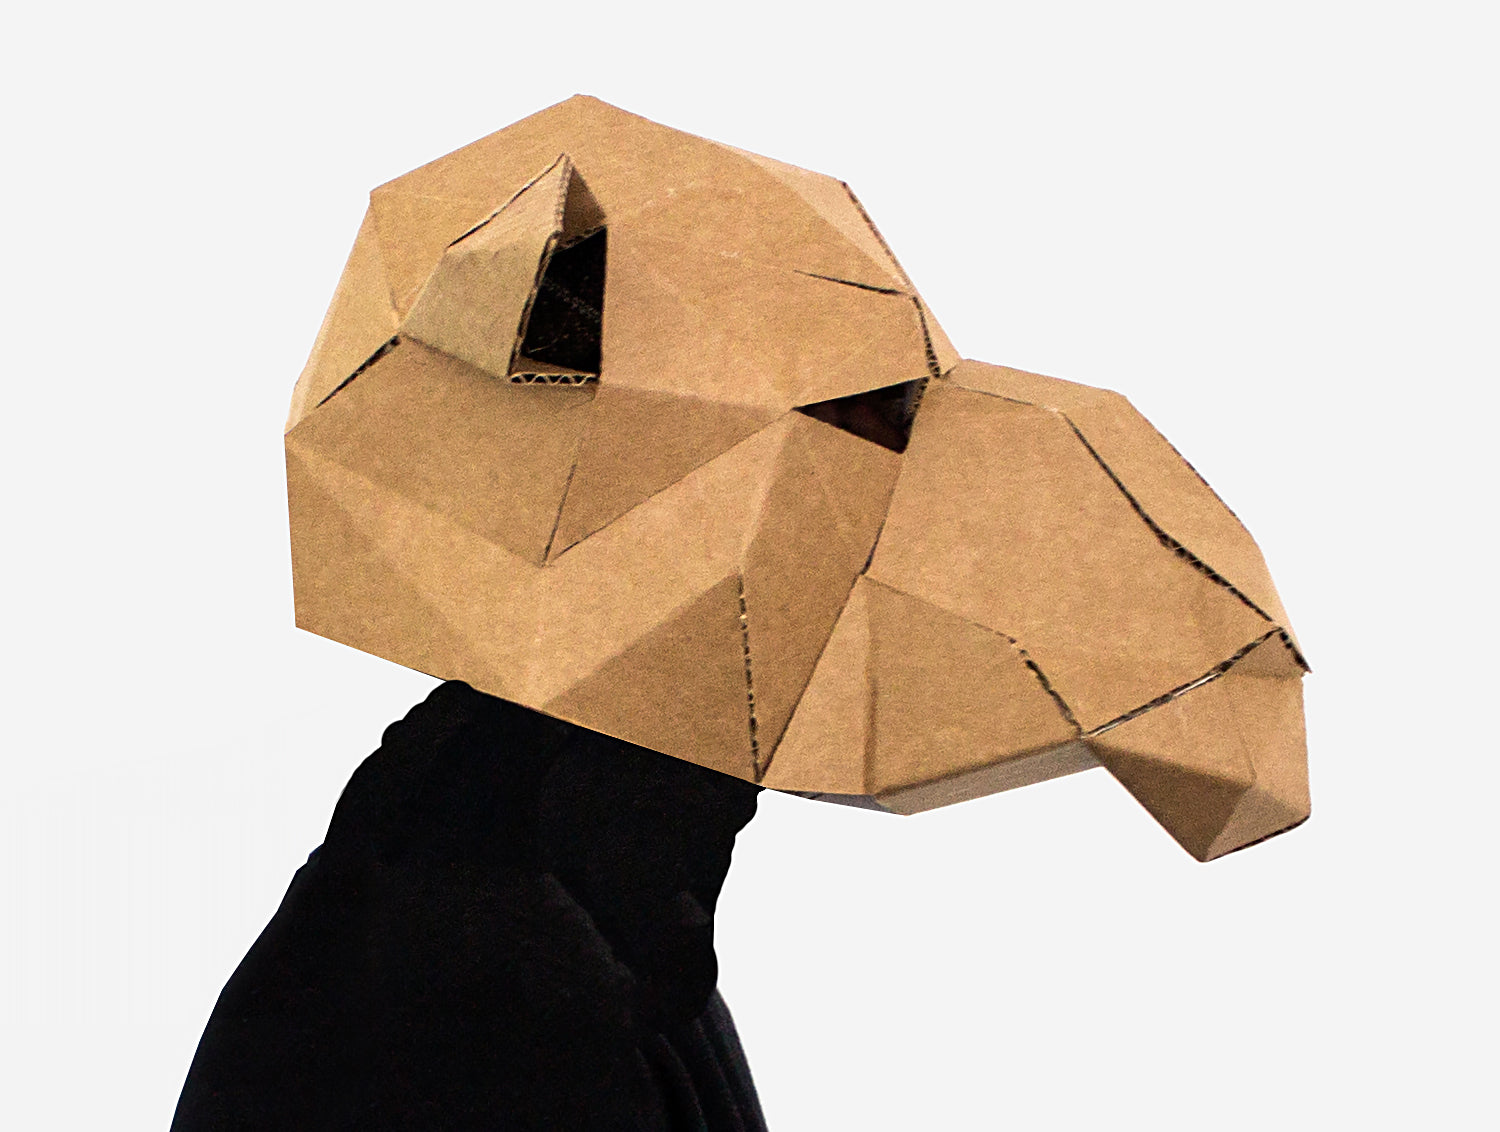 camel-mask-diy-paper-mask-template-lapa-studios